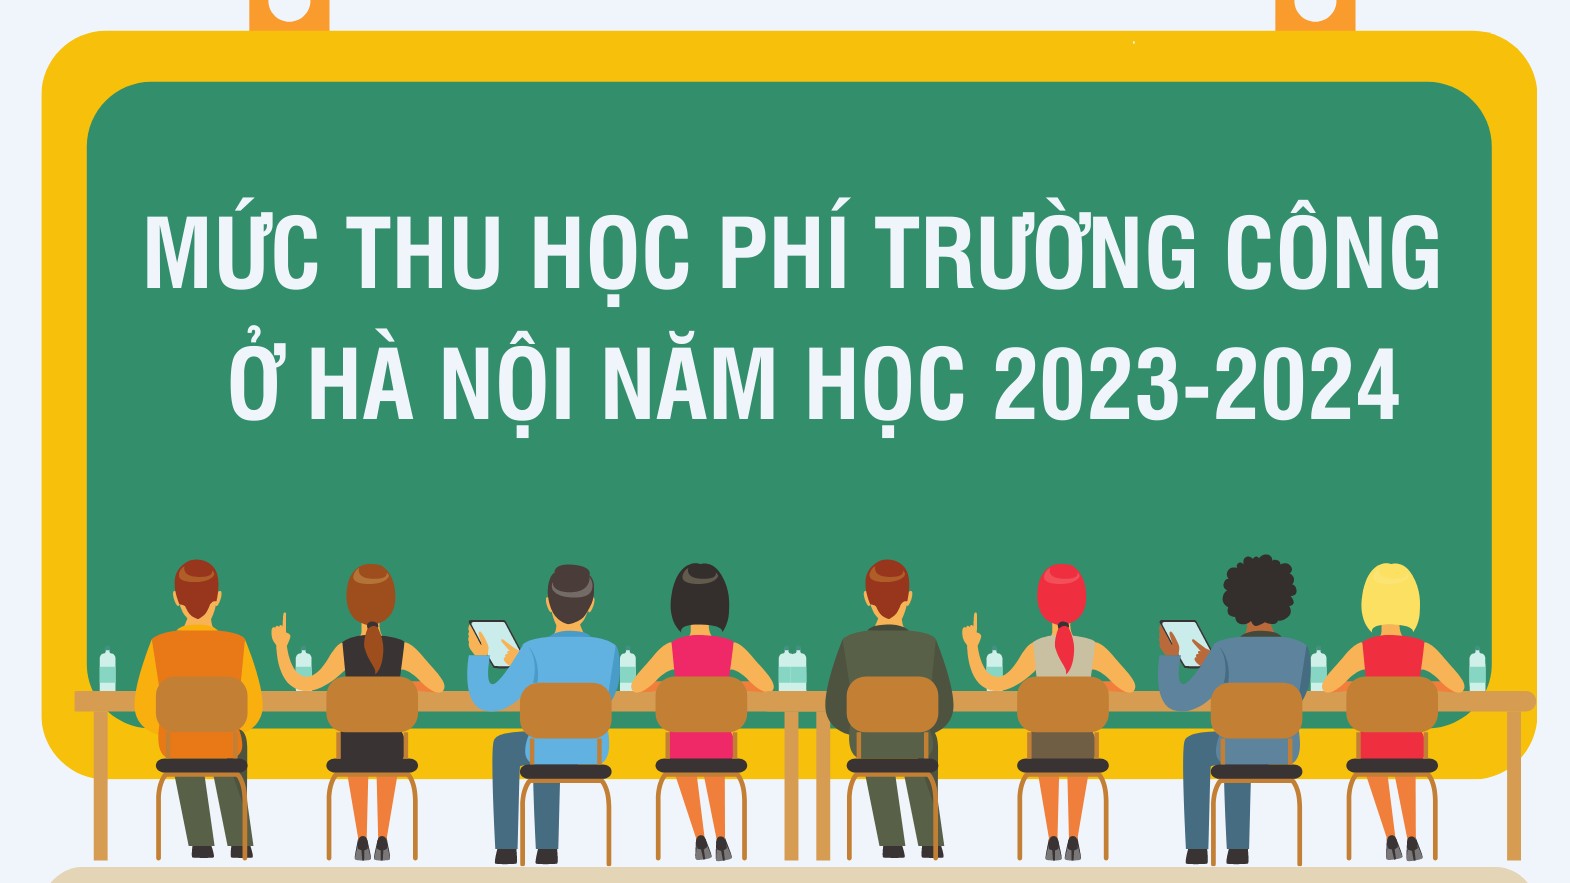 Mức thu học phí trường công ở Hà Nội năm học 2023-2024